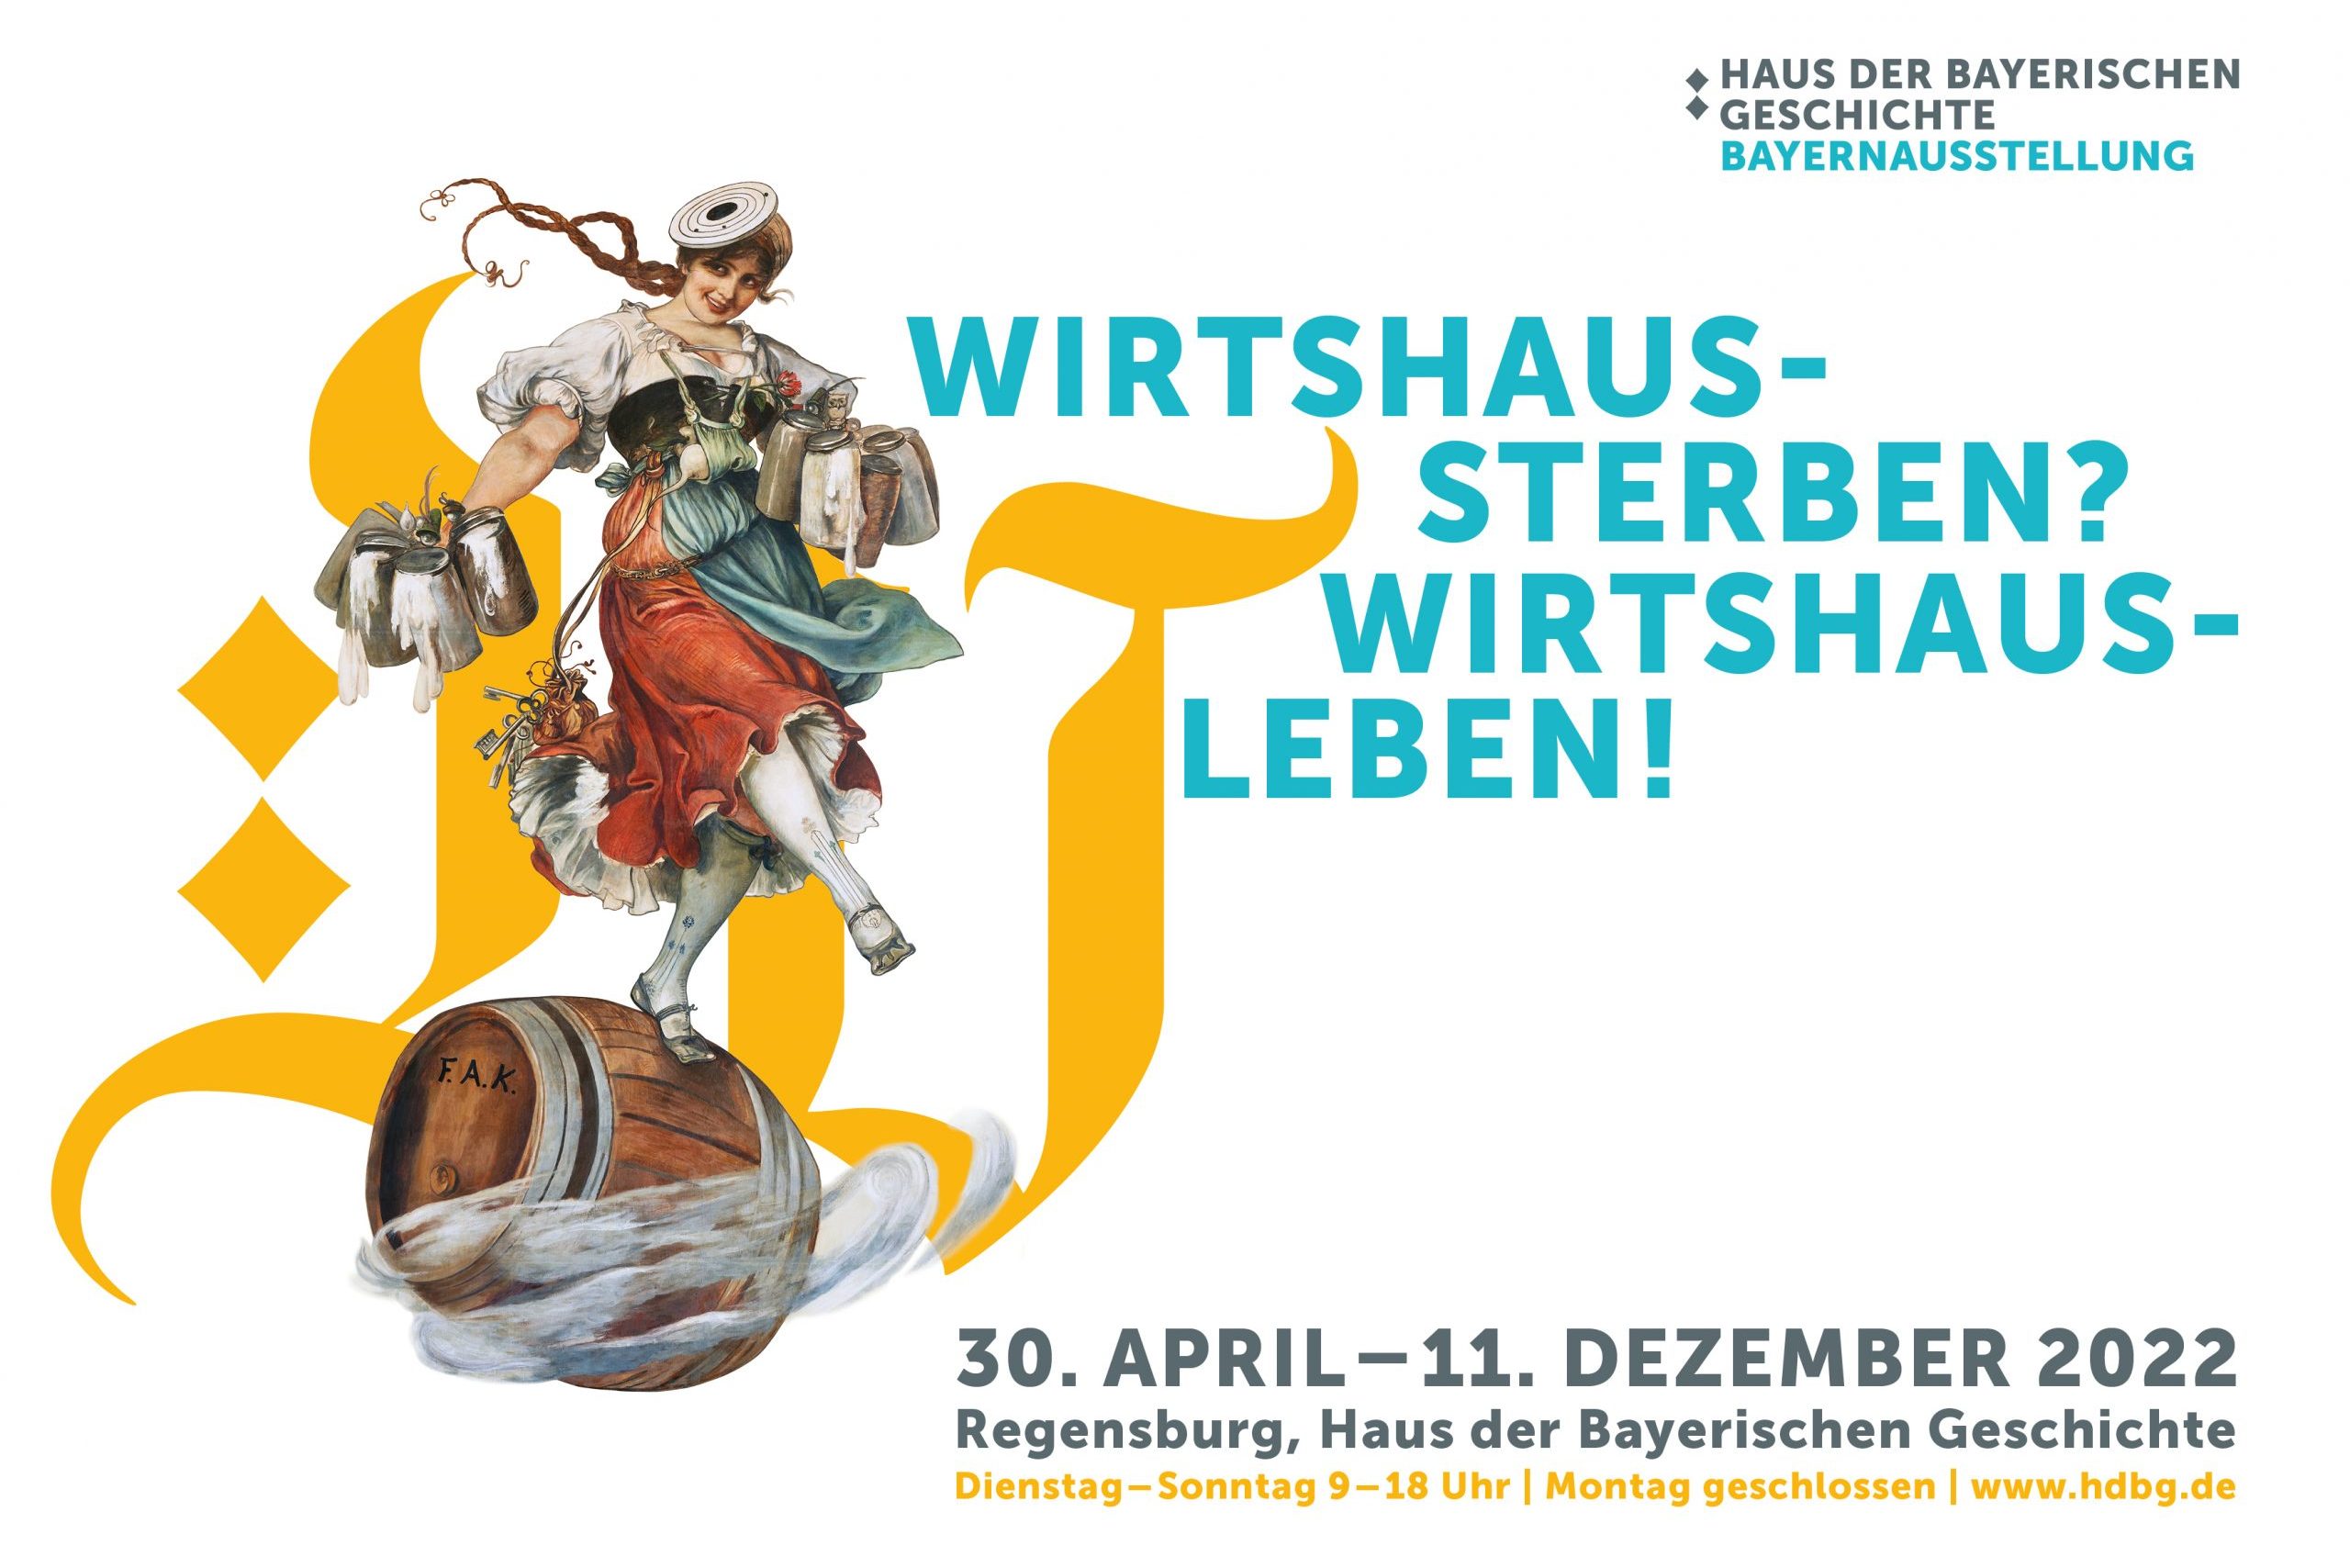 Eröffnung der Bayernausstellung „Wirtshaussterben? Wirtshausleben!“